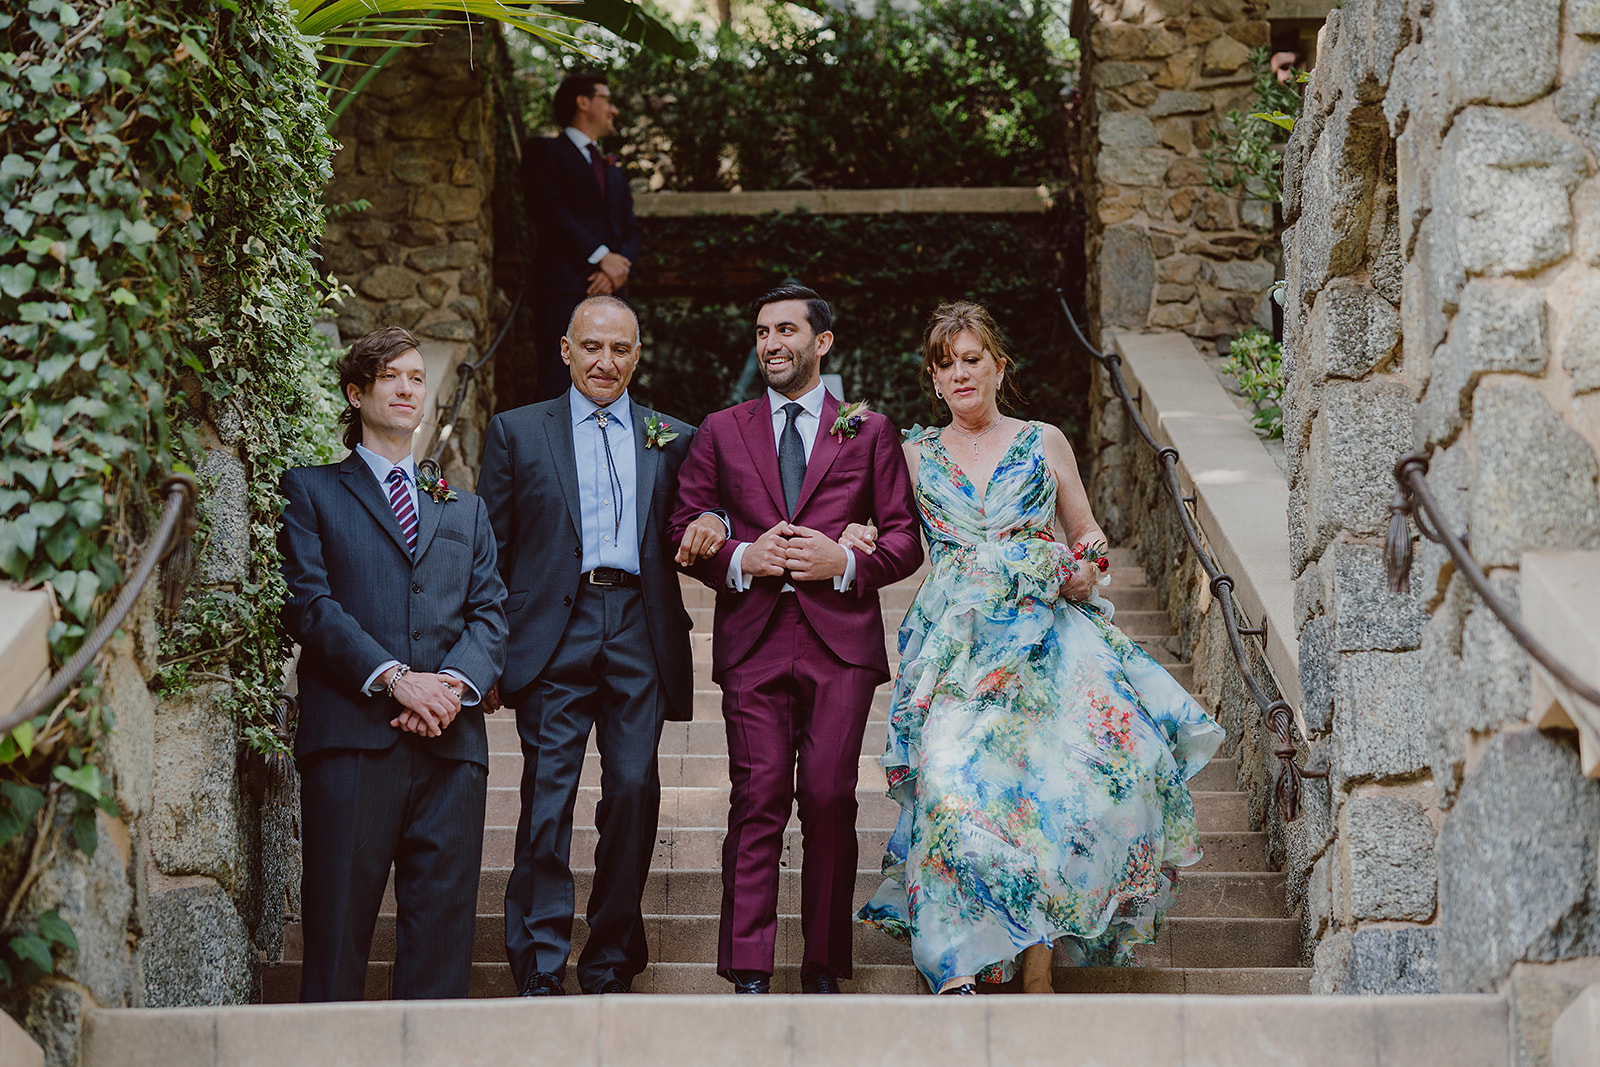 groom in burgundy suit and black tie walks down stair case towards ceremony